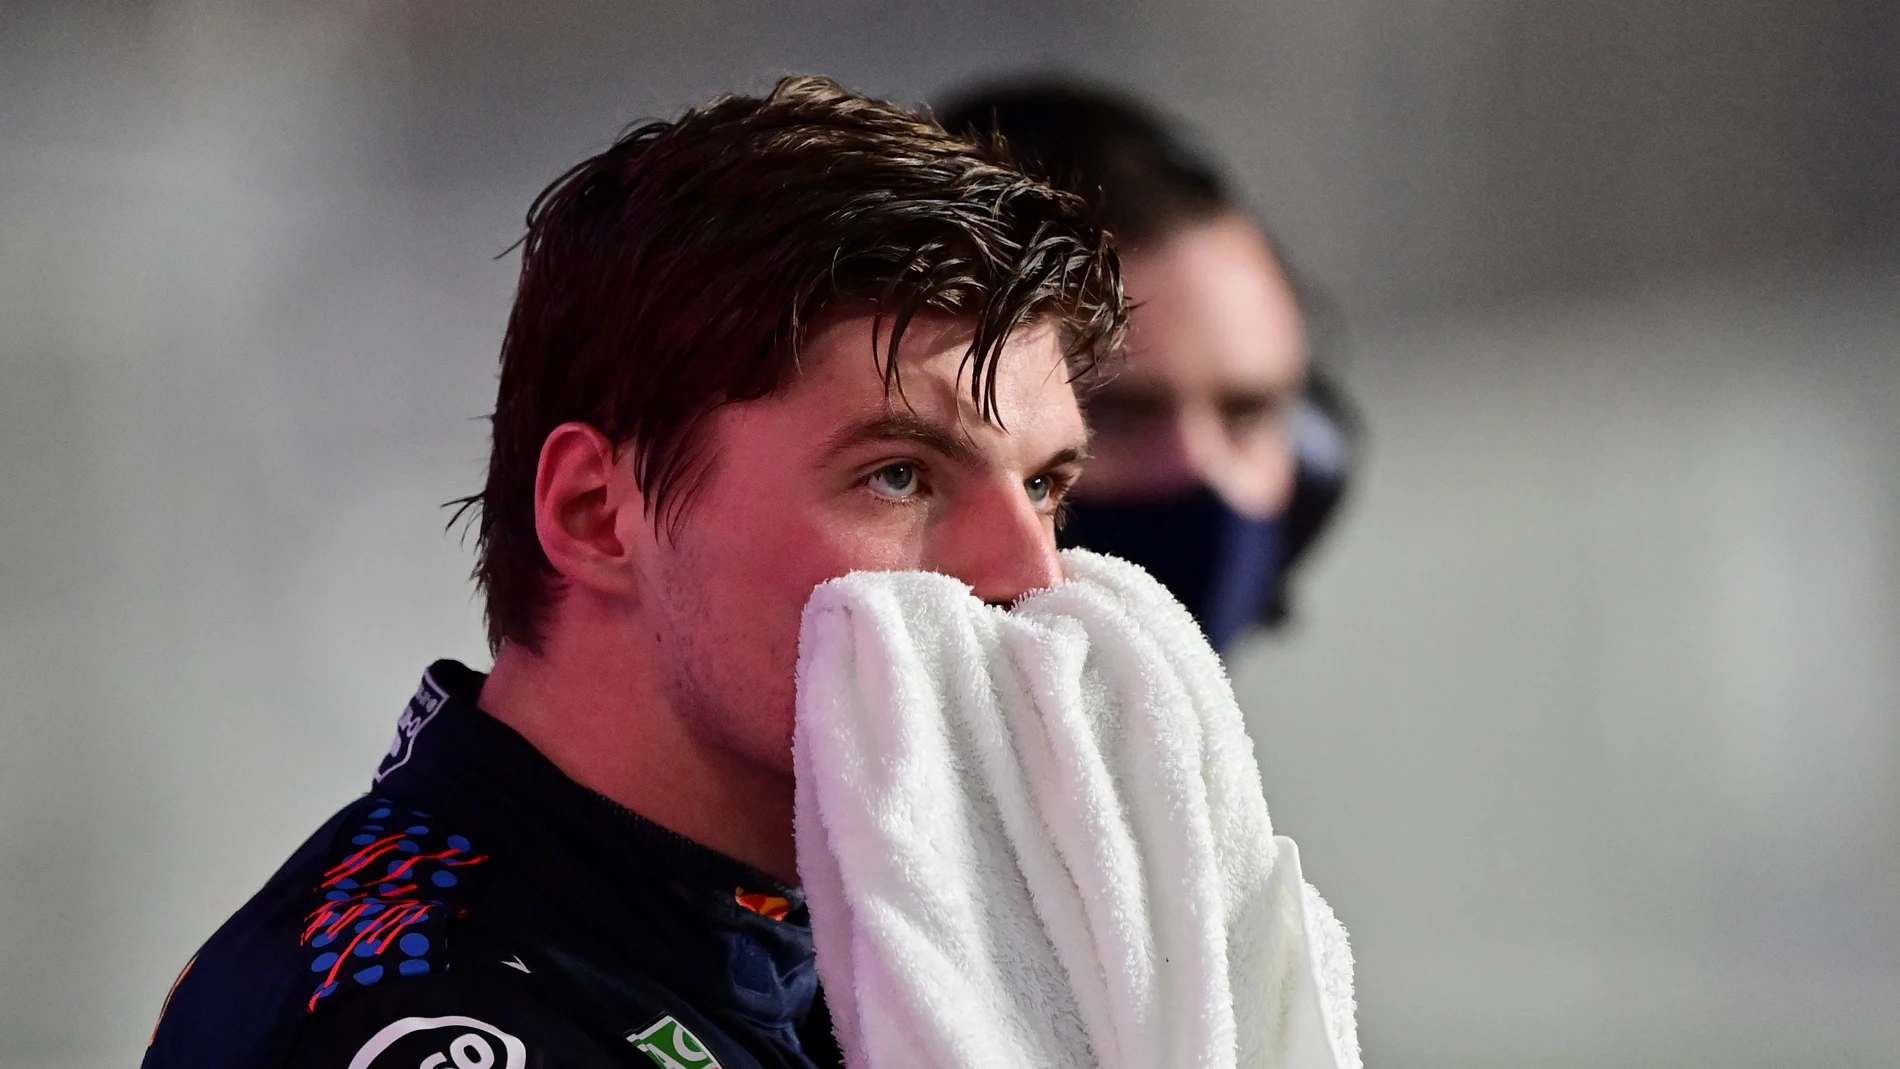 La FIA impone 10 segundos de sanción a Verstappen por una frenada &quot;errática&quot; que provocó una colisión